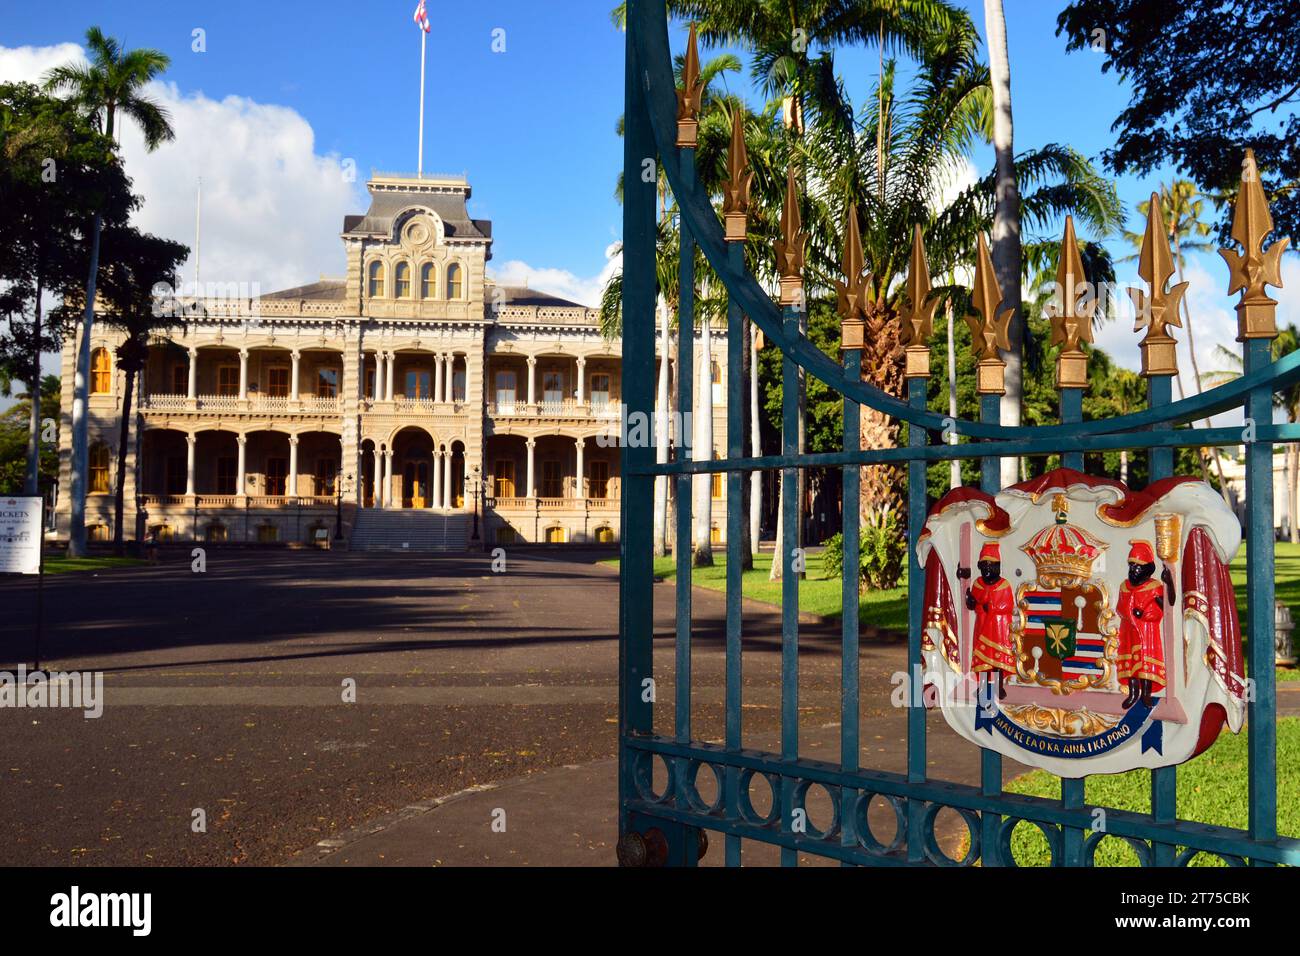 Die offenen Tore mit dem Emblem der königlichen hawaiianischen Familie führen zum Iolani Palace, dem einzigen Königspalast in den Vereinigten Staaten Stockfoto